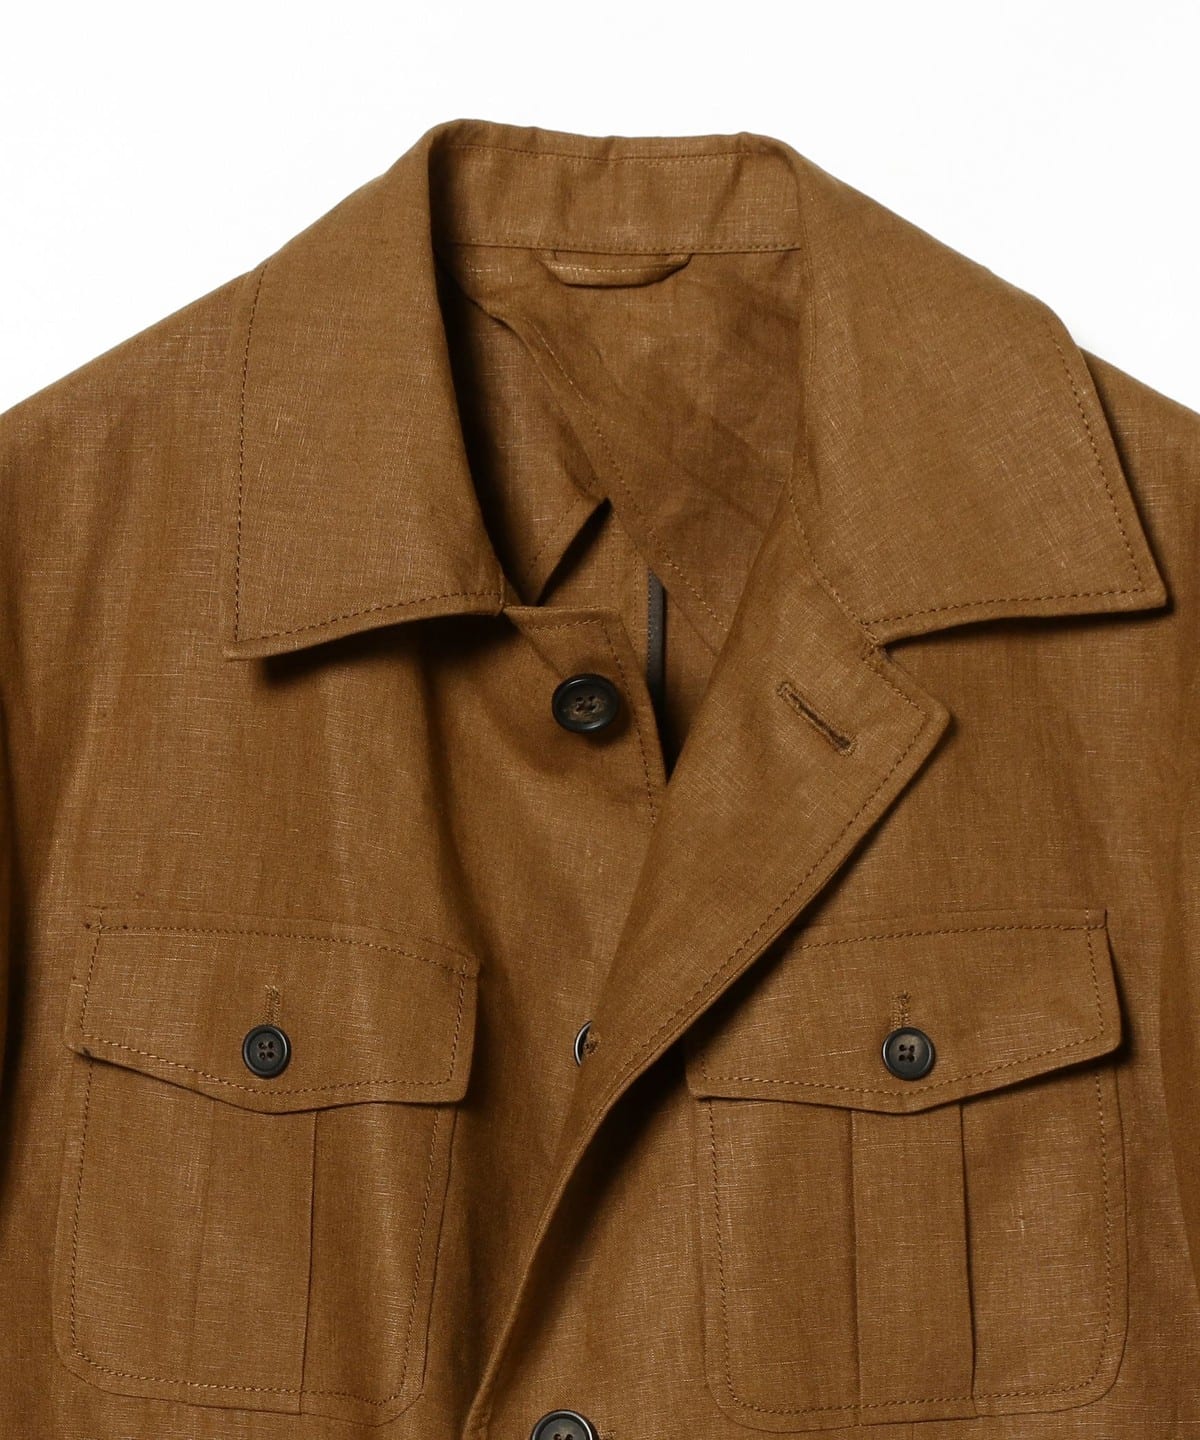 BEAMS F BEAMS / CORDINGS safari jacket (casual jacket) mail order ...